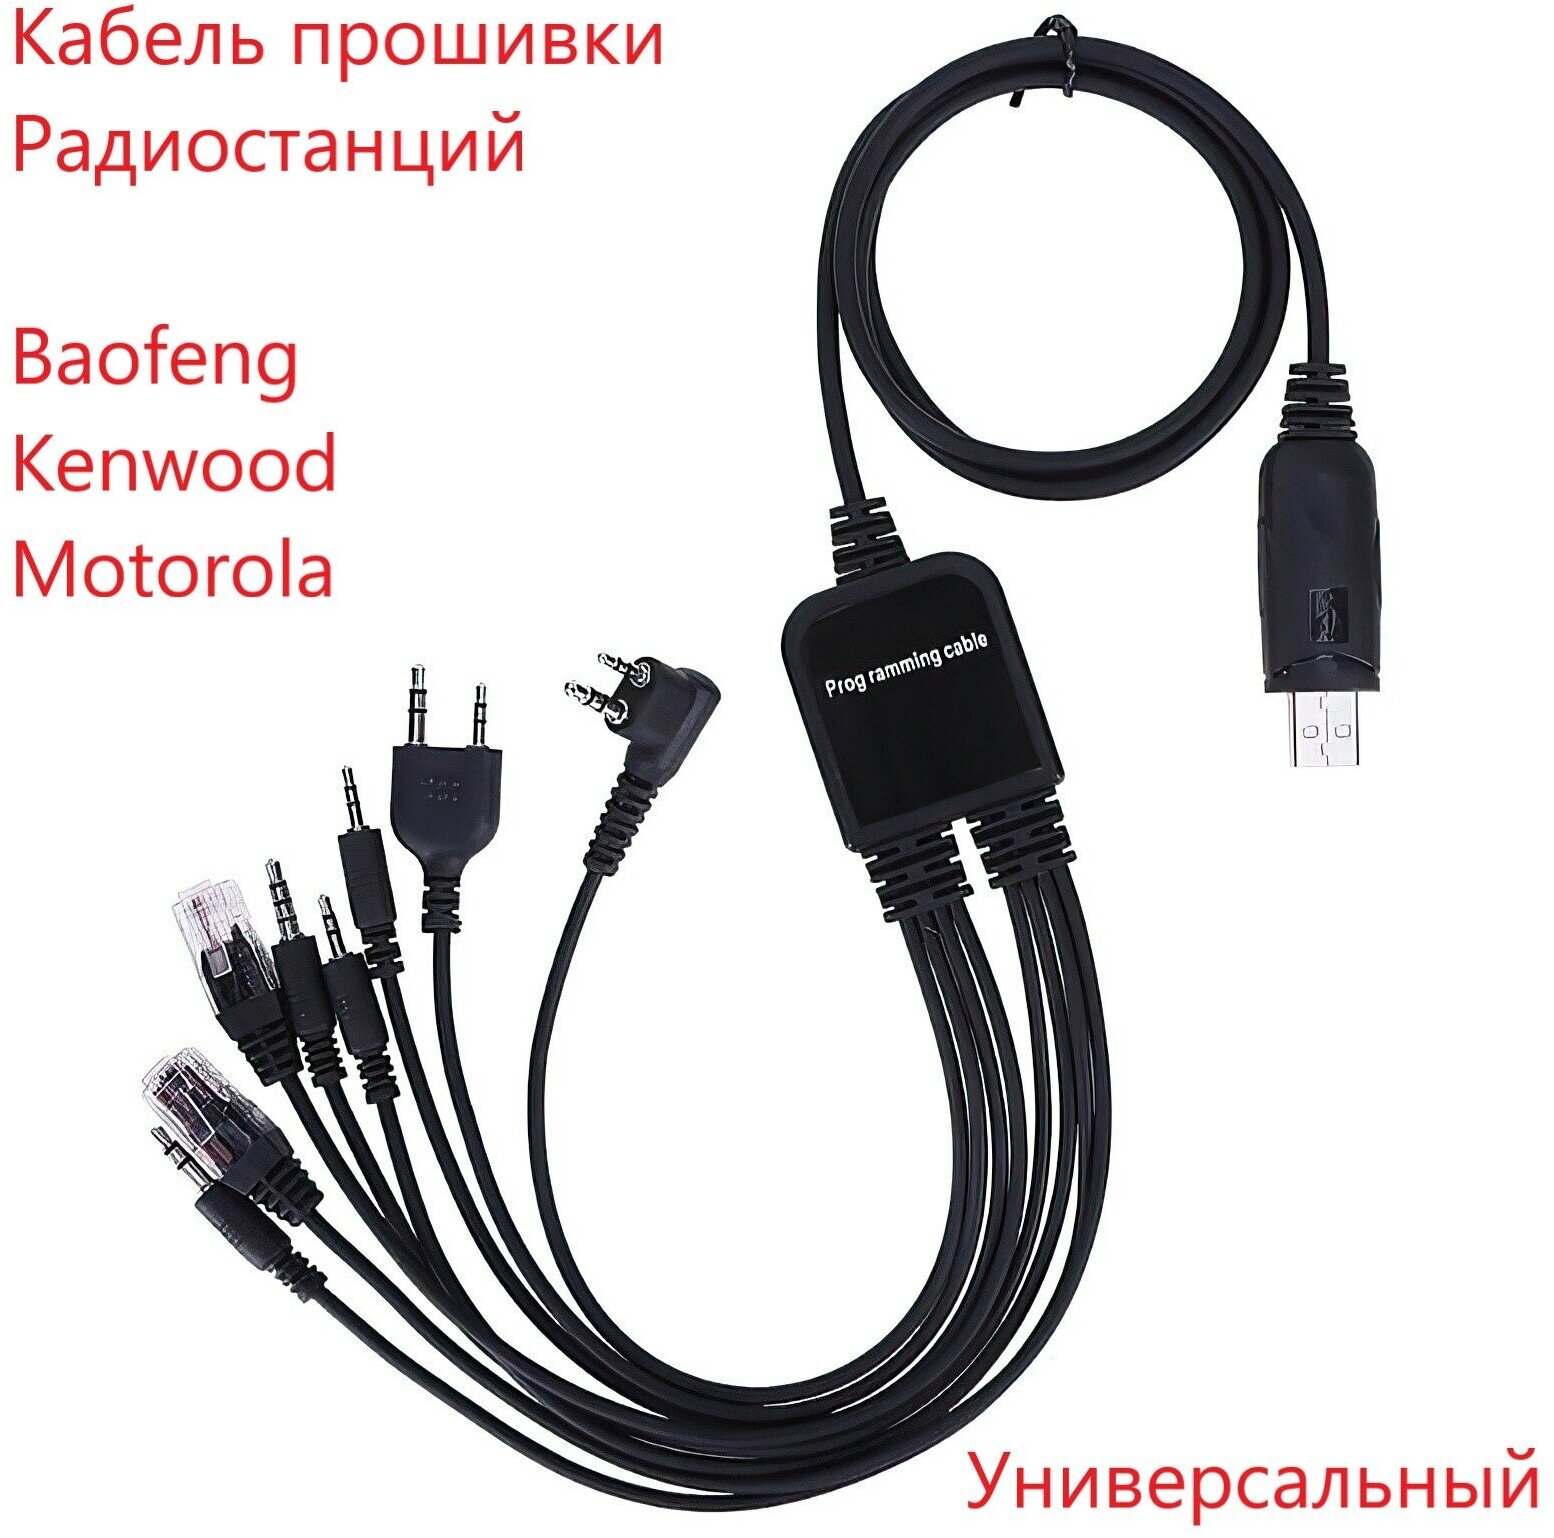 Кабель для программирования раций Baofeng Kenwood кабель для прошивки рации 8 в 1 кабель программатор частот раций.